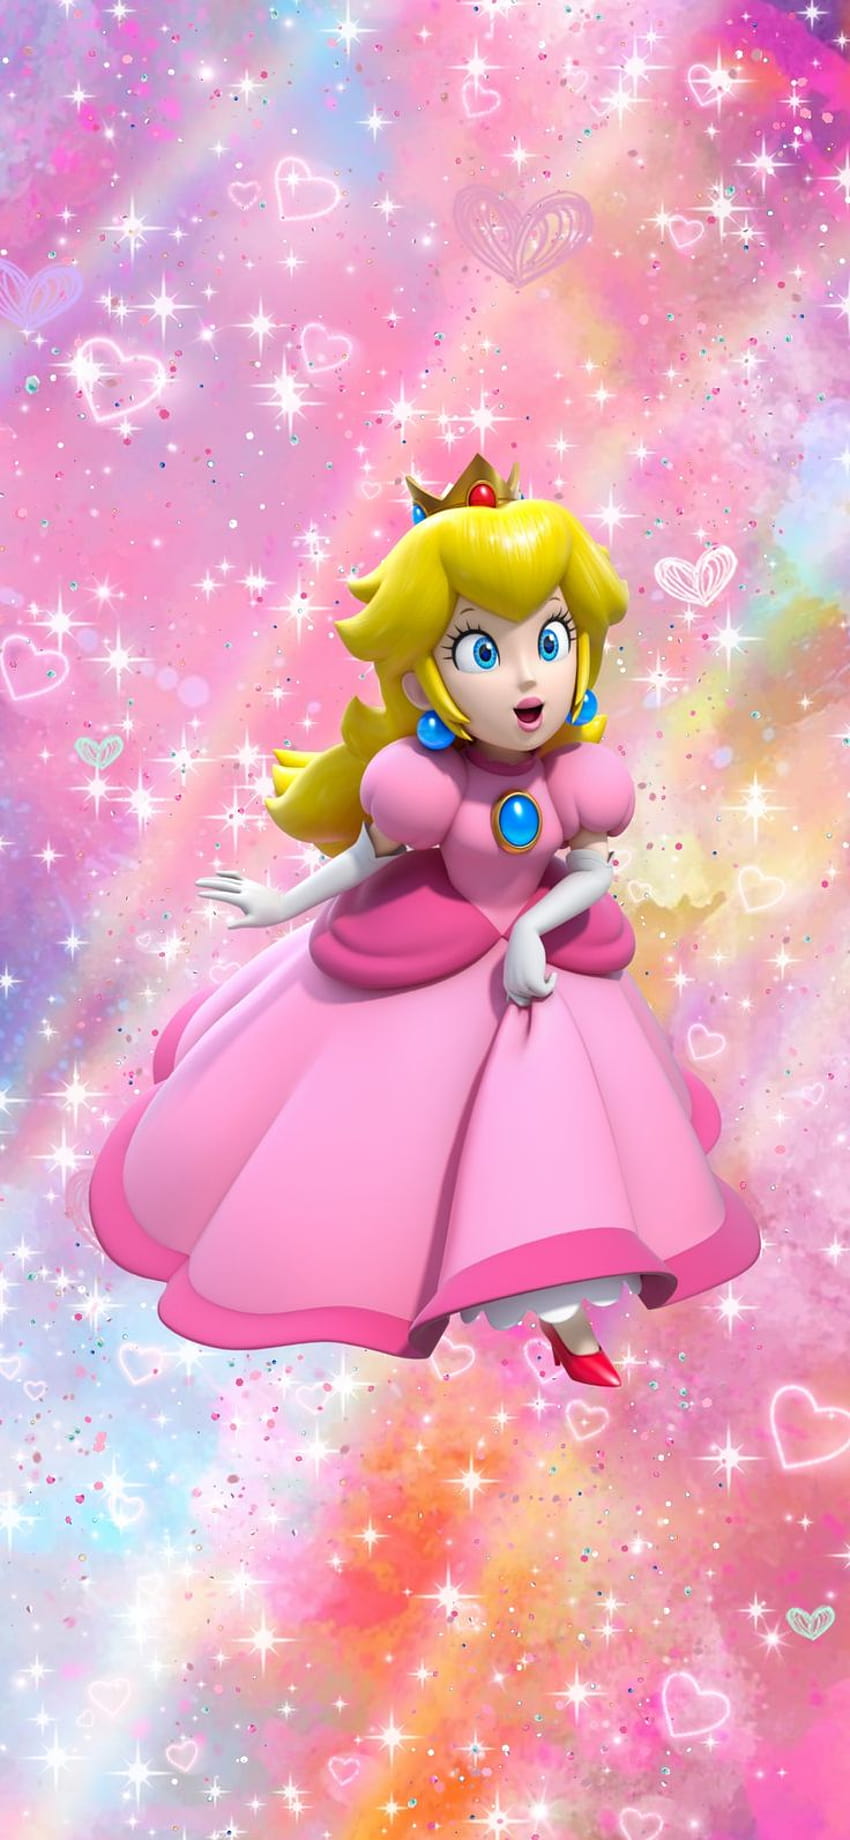 Nintendo Princess Peach aesthetic phone backgrounds, princess peach phone HD phone wallpaper